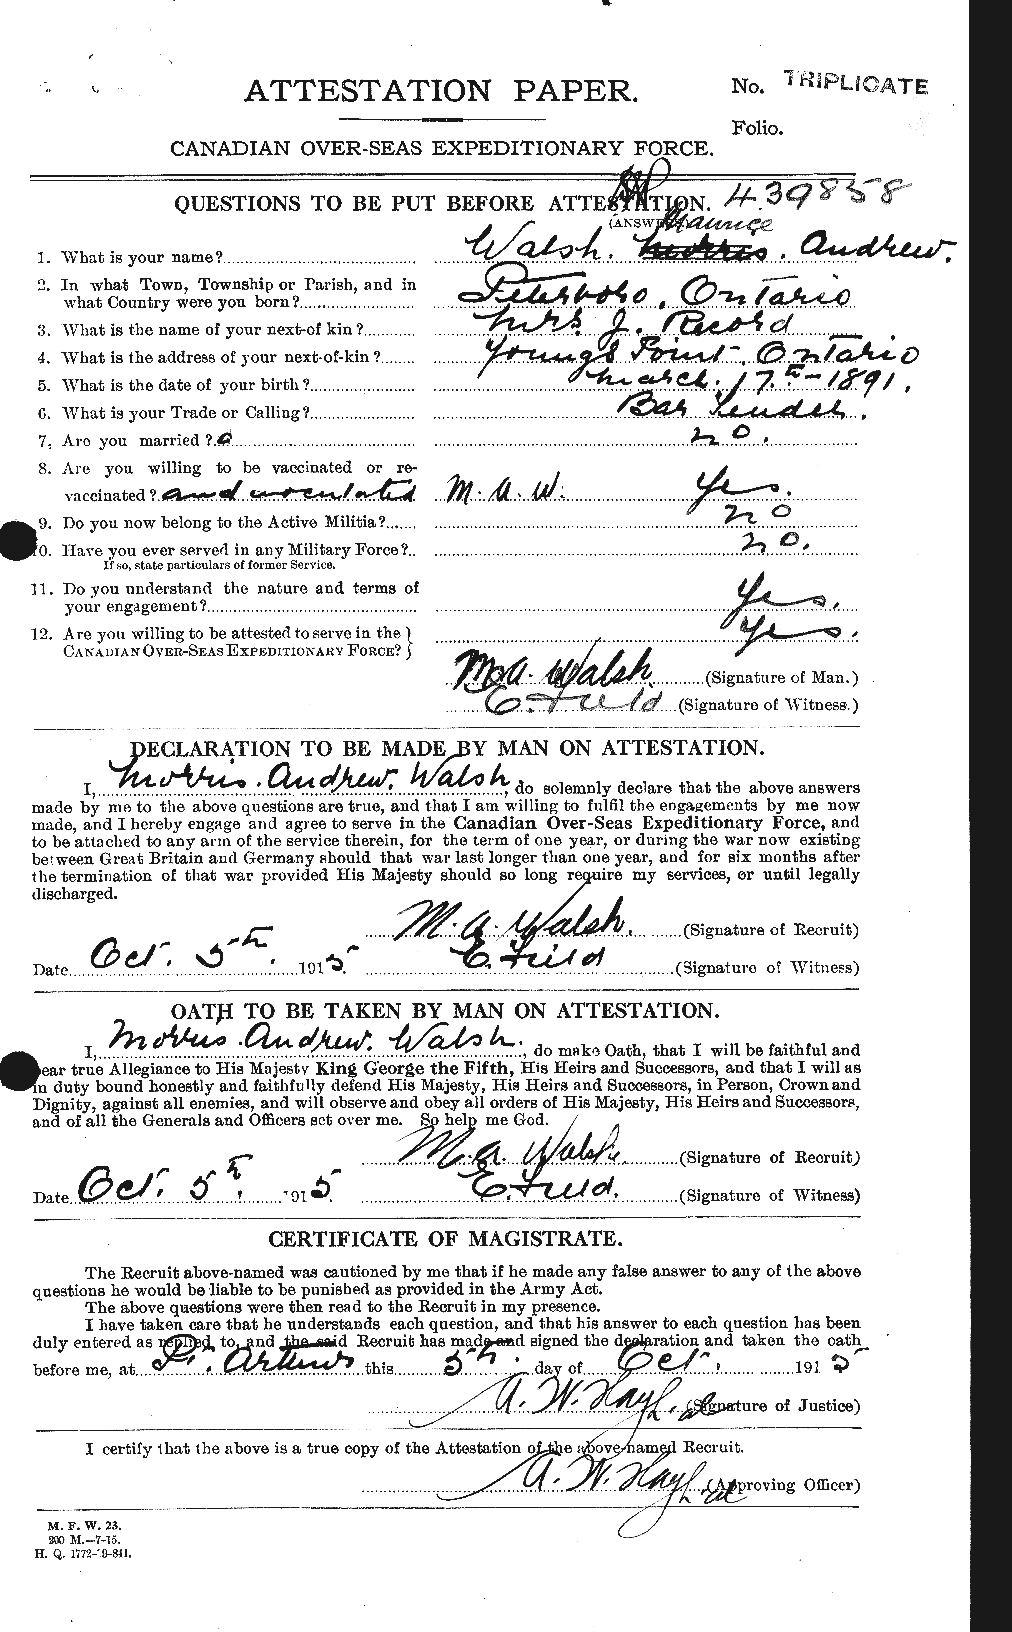 Dossiers du Personnel de la Première Guerre mondiale - CEC 653424a